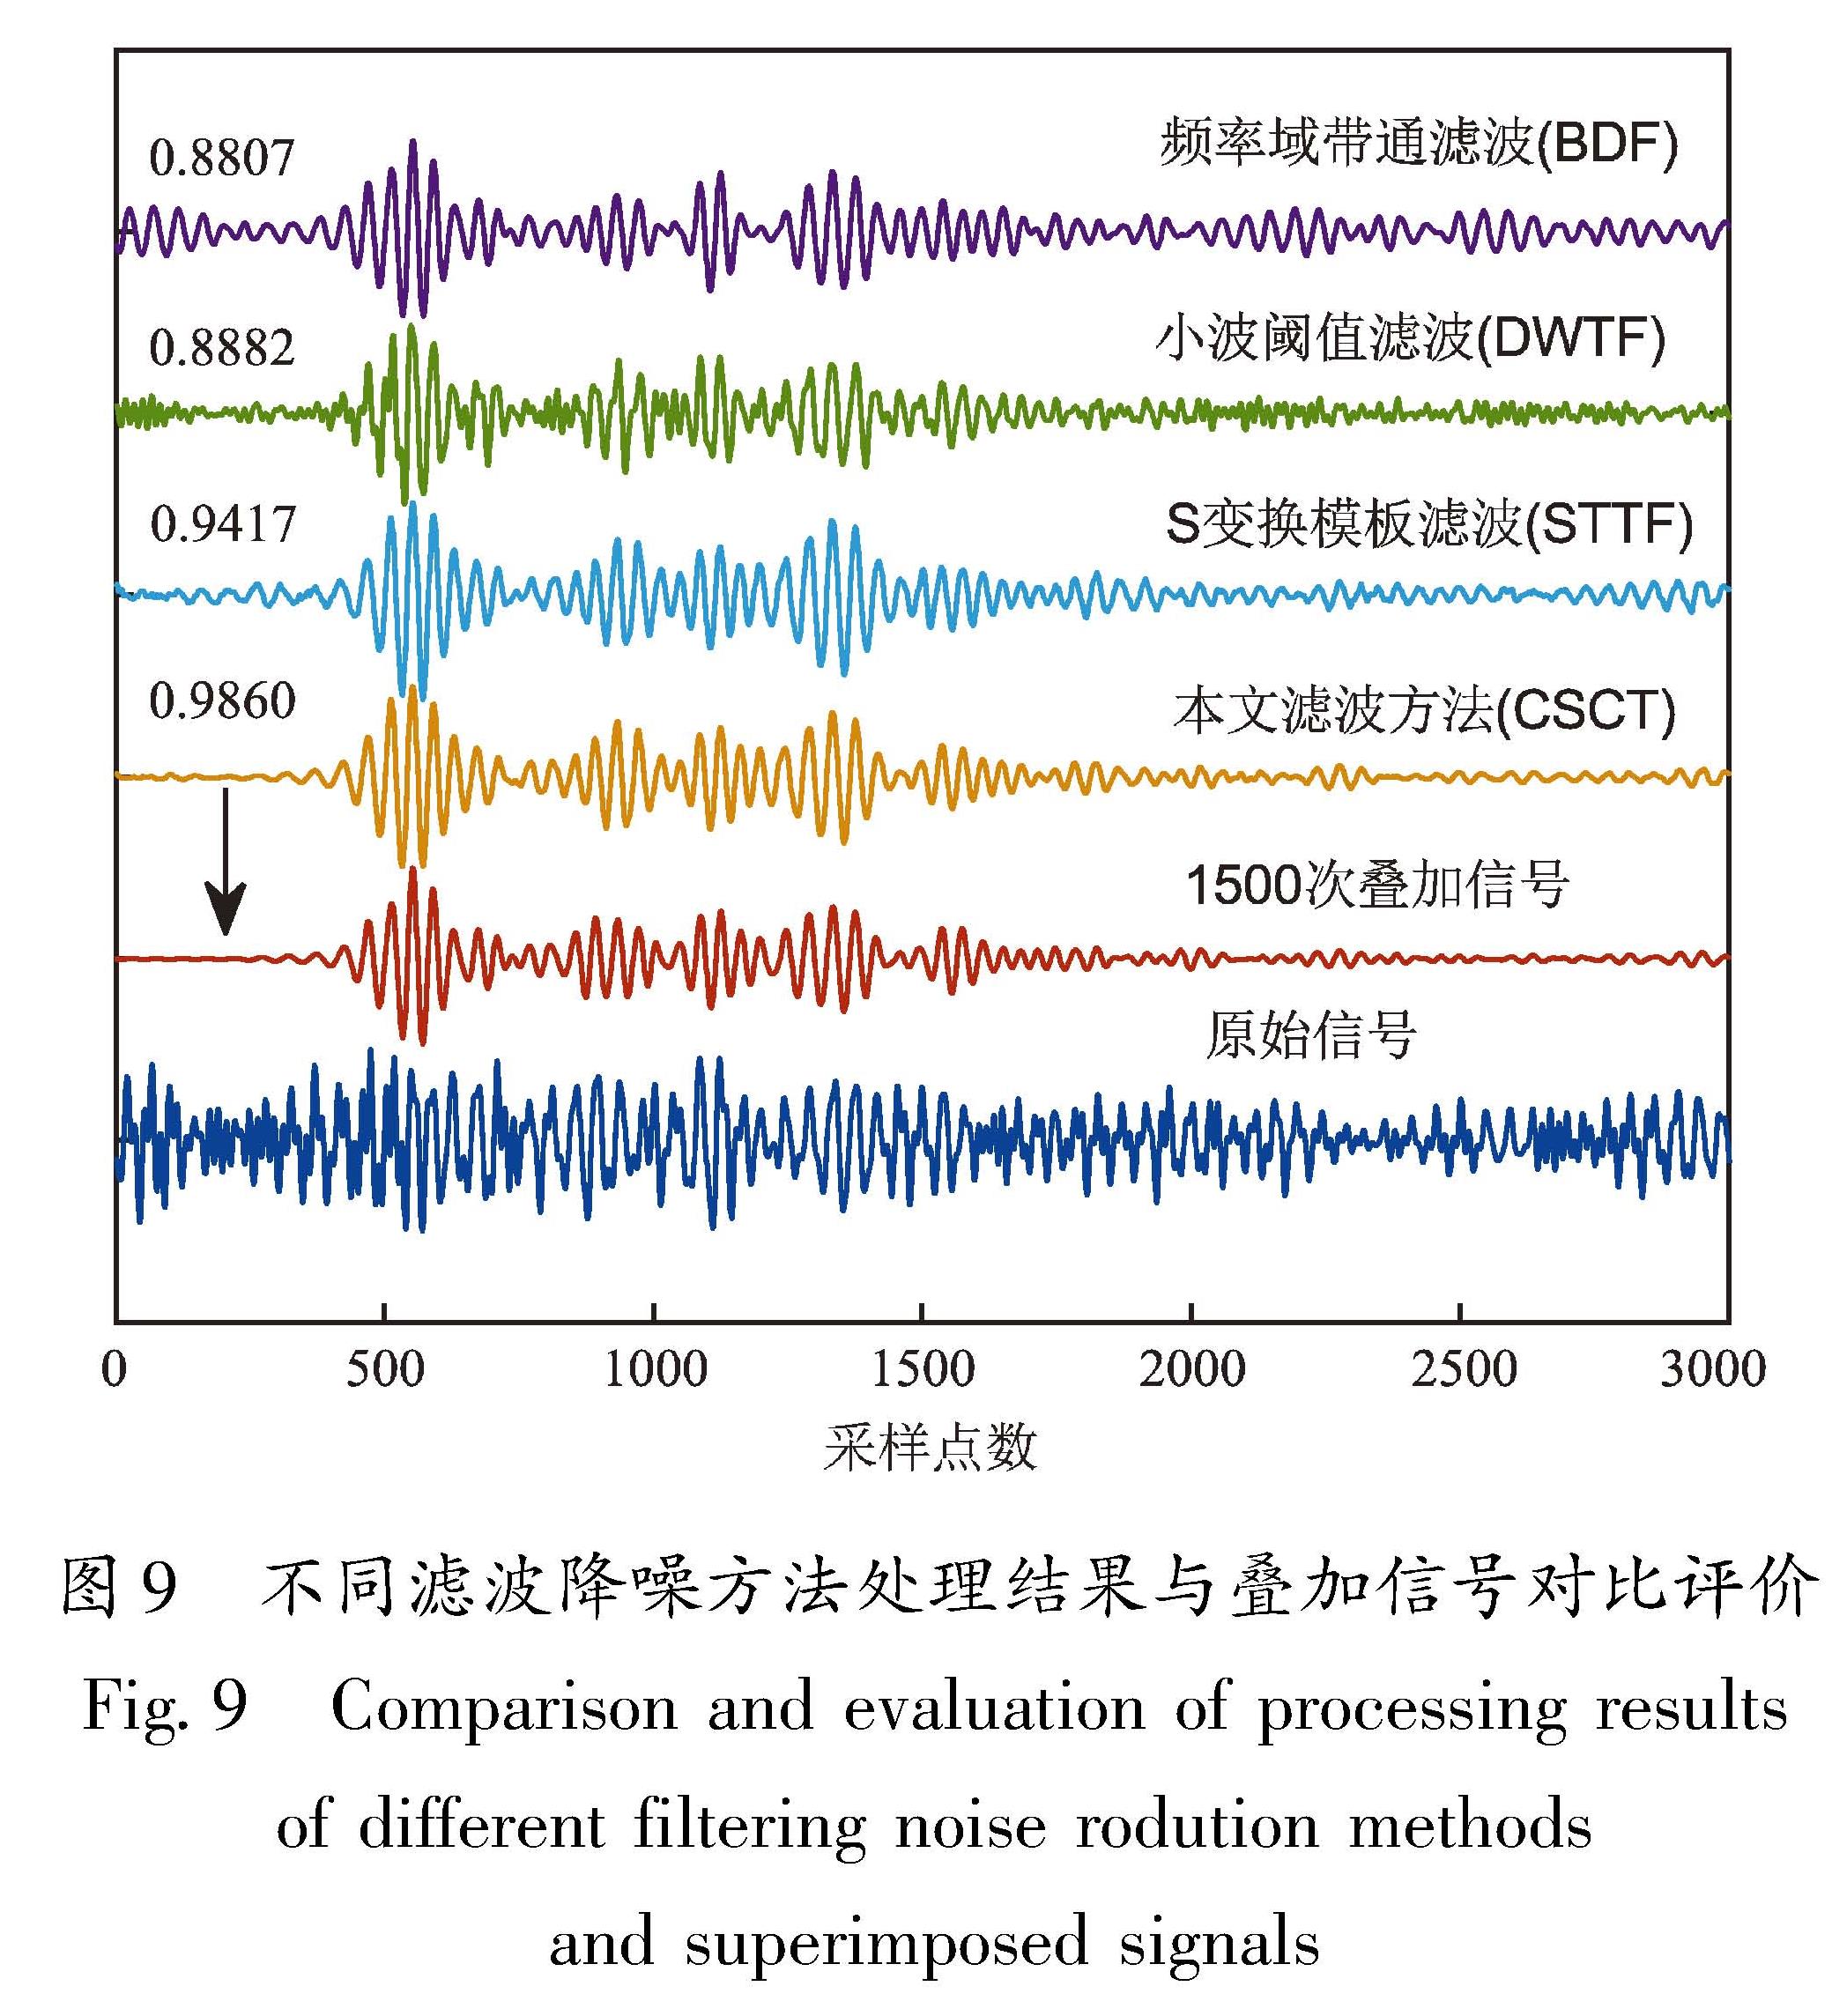 图9 不同滤波降噪方法处理结果与叠加信号对比评价<br/>Fig.9 Comparison and evaluation of processing results of different filtering noise rodution methods and superimposed signals